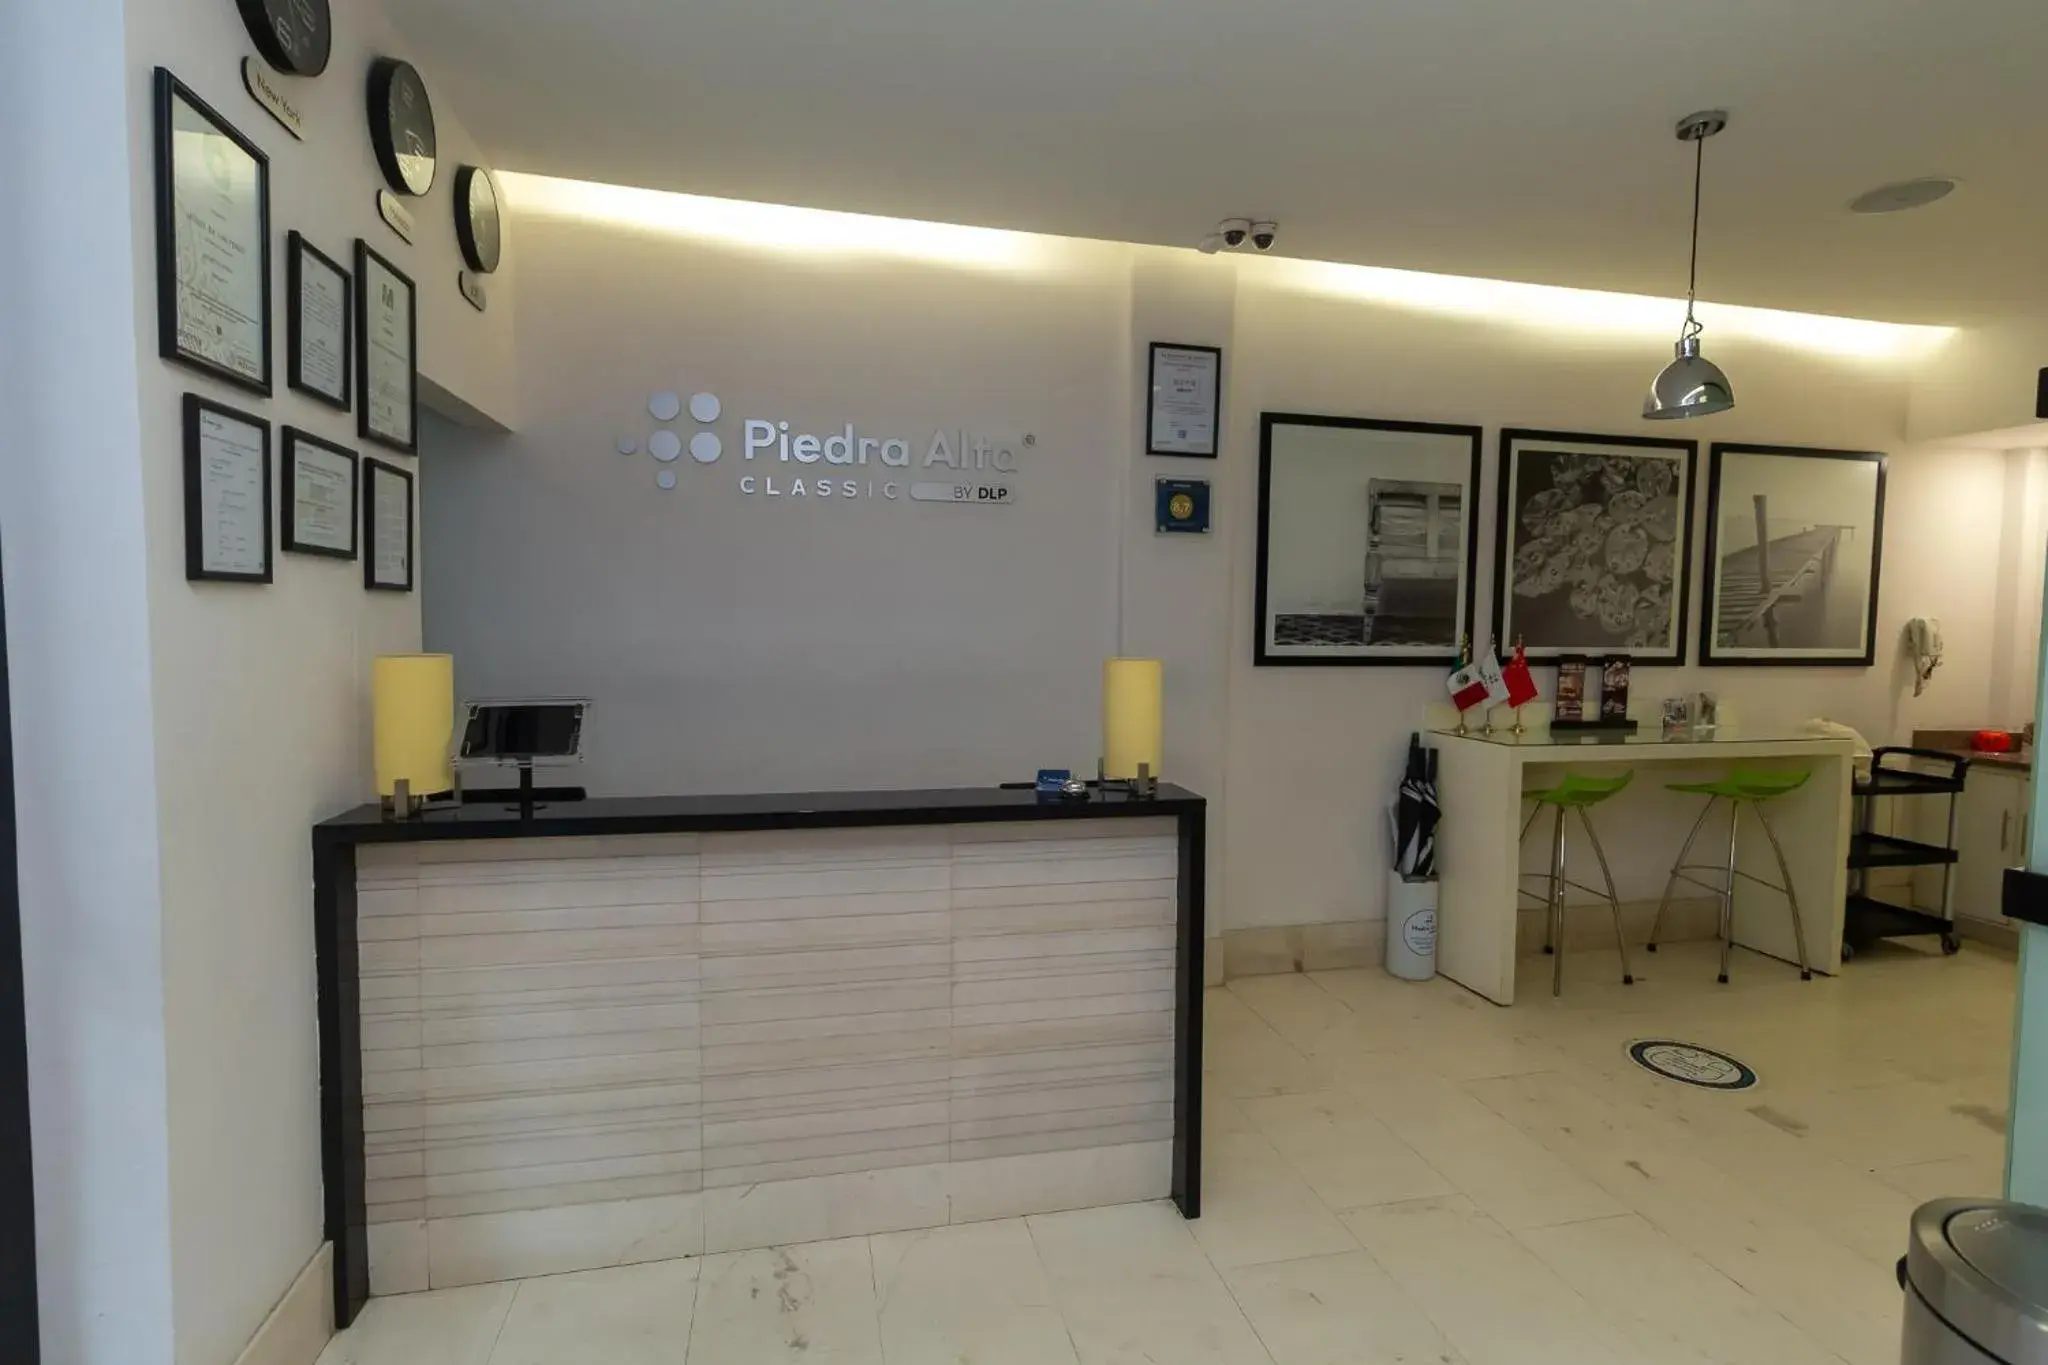 Lobby or reception, Lobby/Reception in Hoteles Piedra Alta by De Los Perez